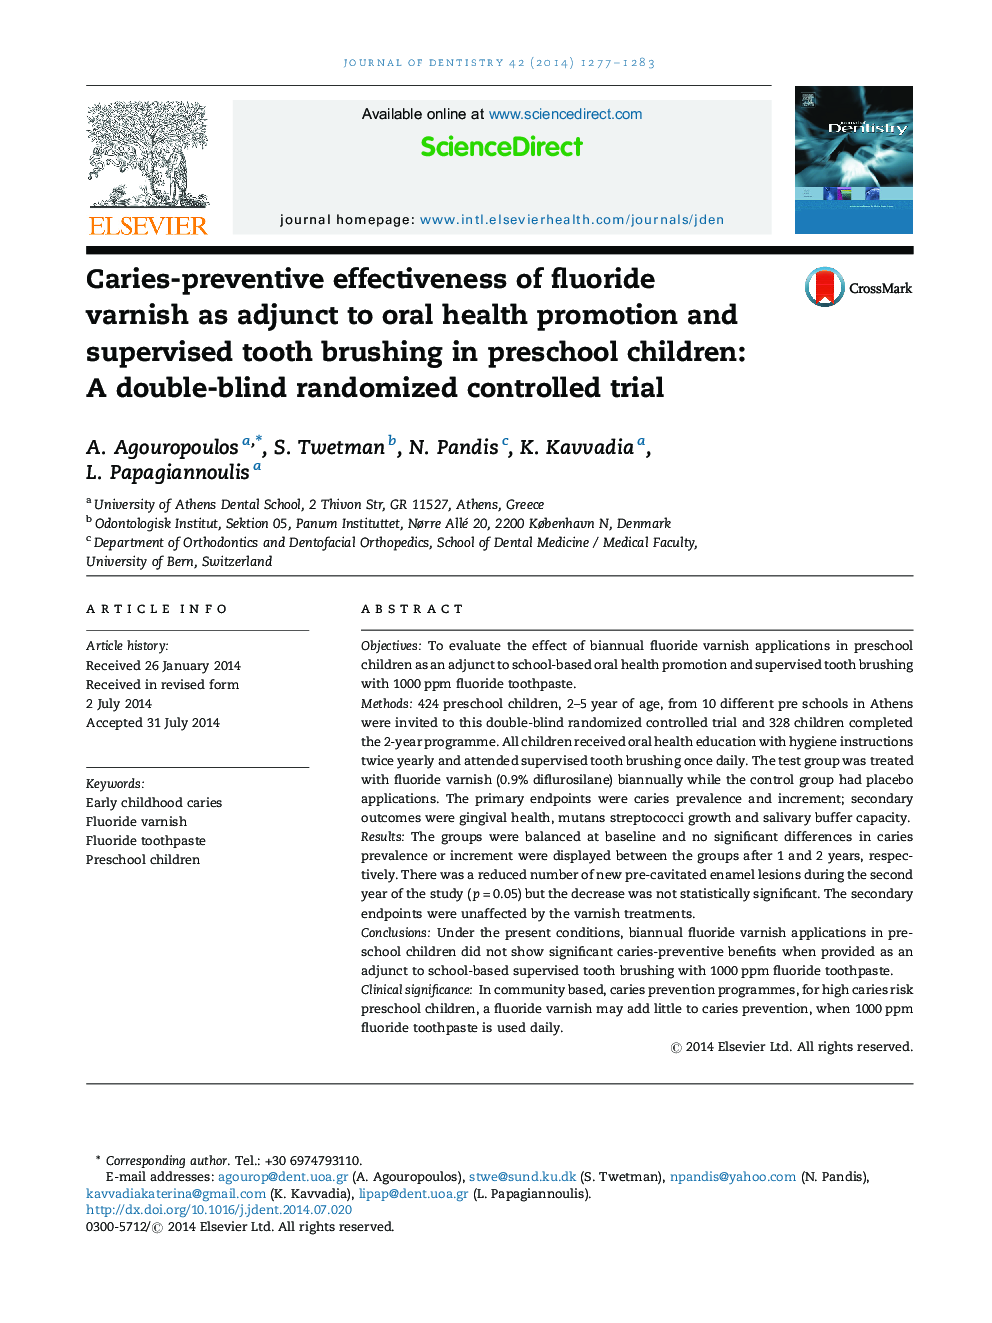 کارایی پیشگیرانه پوسیدگی لاکشن فلوراید به منظور ارتقاء سلامت دهان و مراقبت از دندان ها در کودکان پیش دبستانی: یک کارآزمایی بالینی تصادفی دو سوکور 